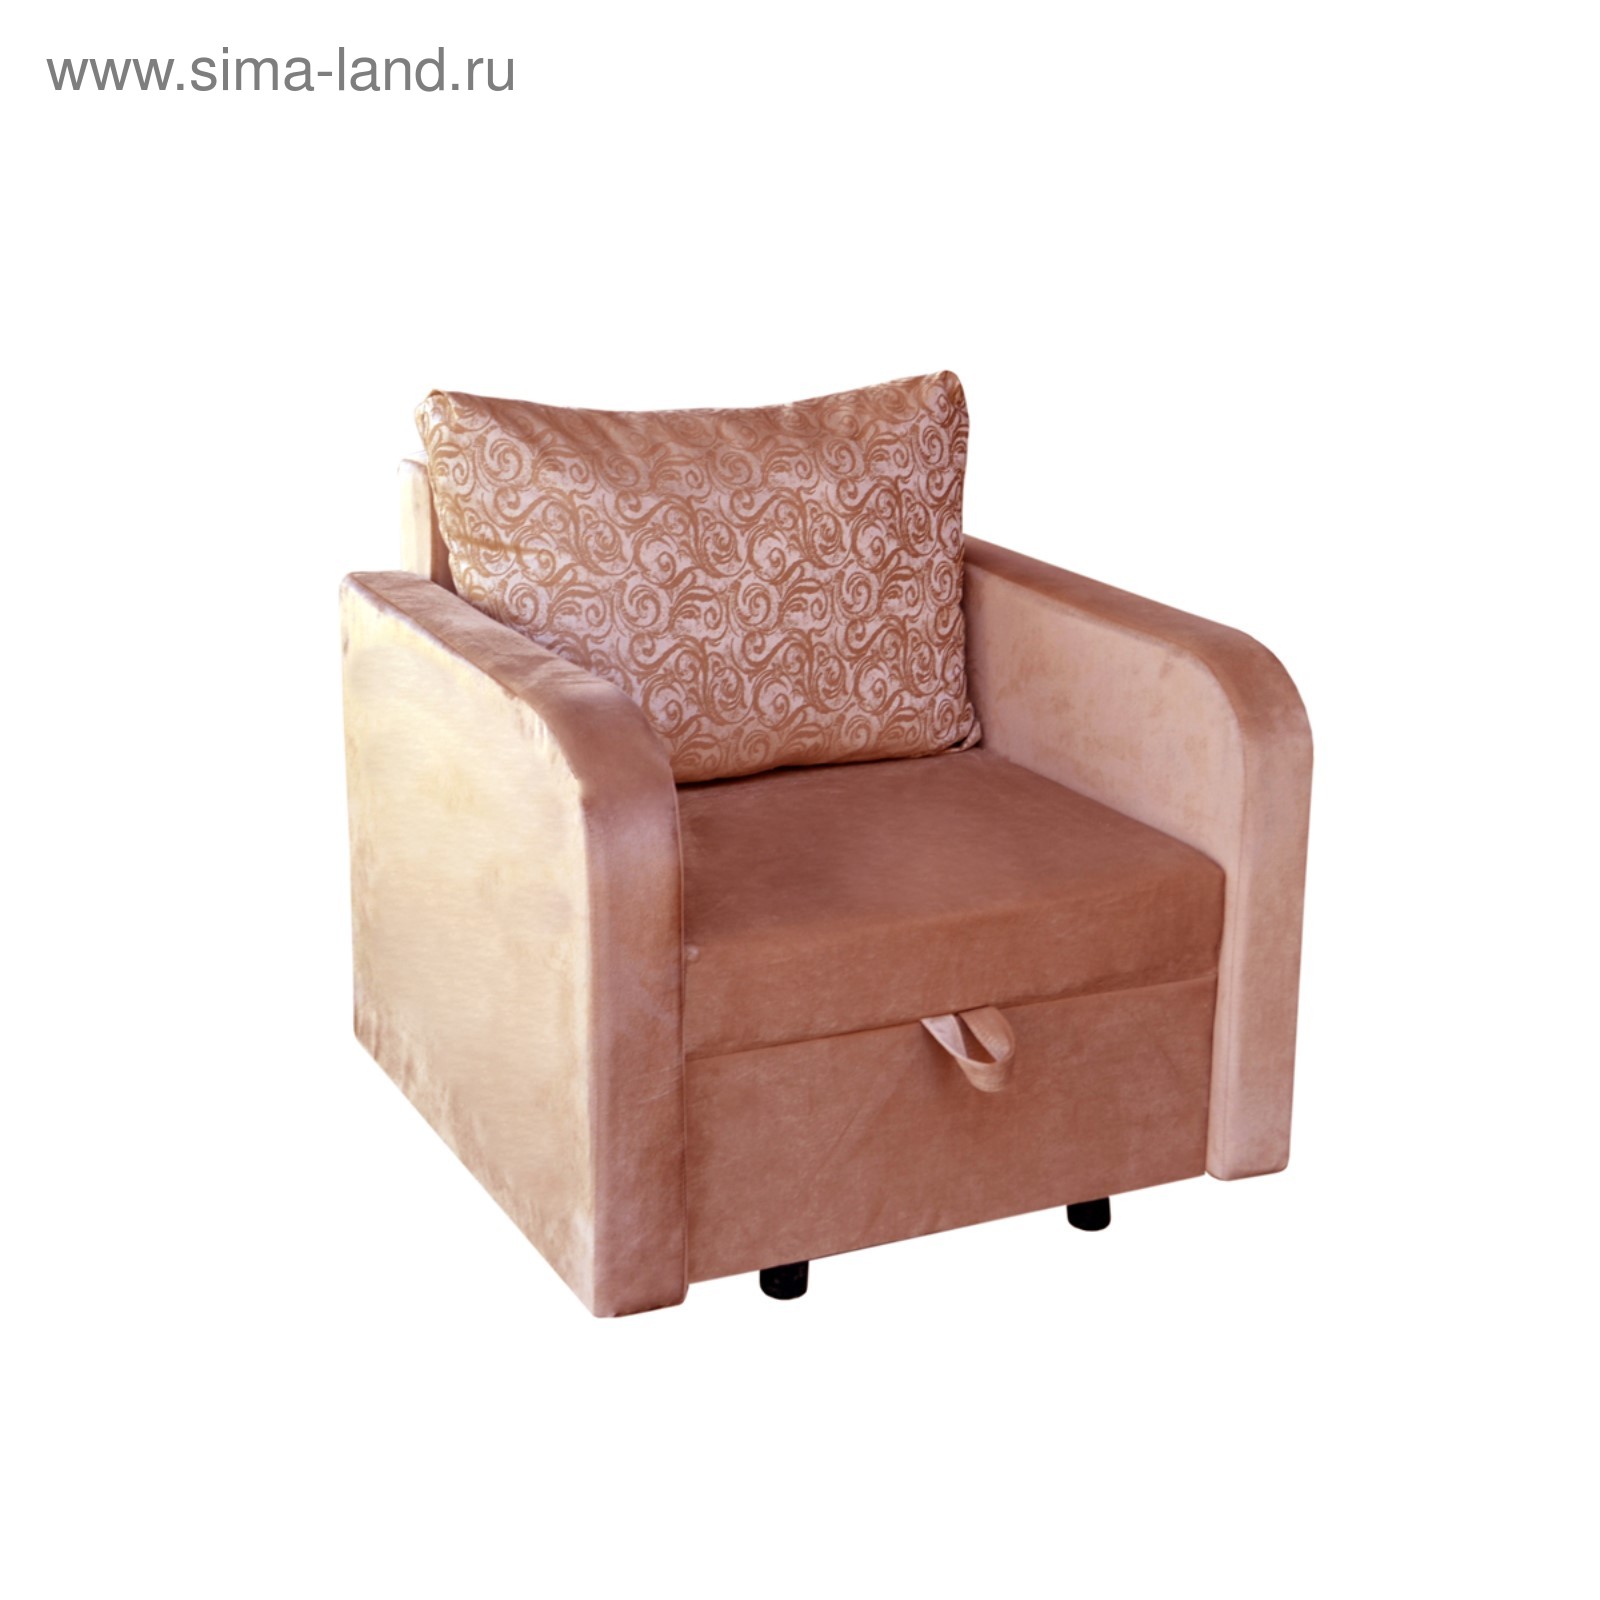 Кресло-кровать Вилли 108х80х84 см